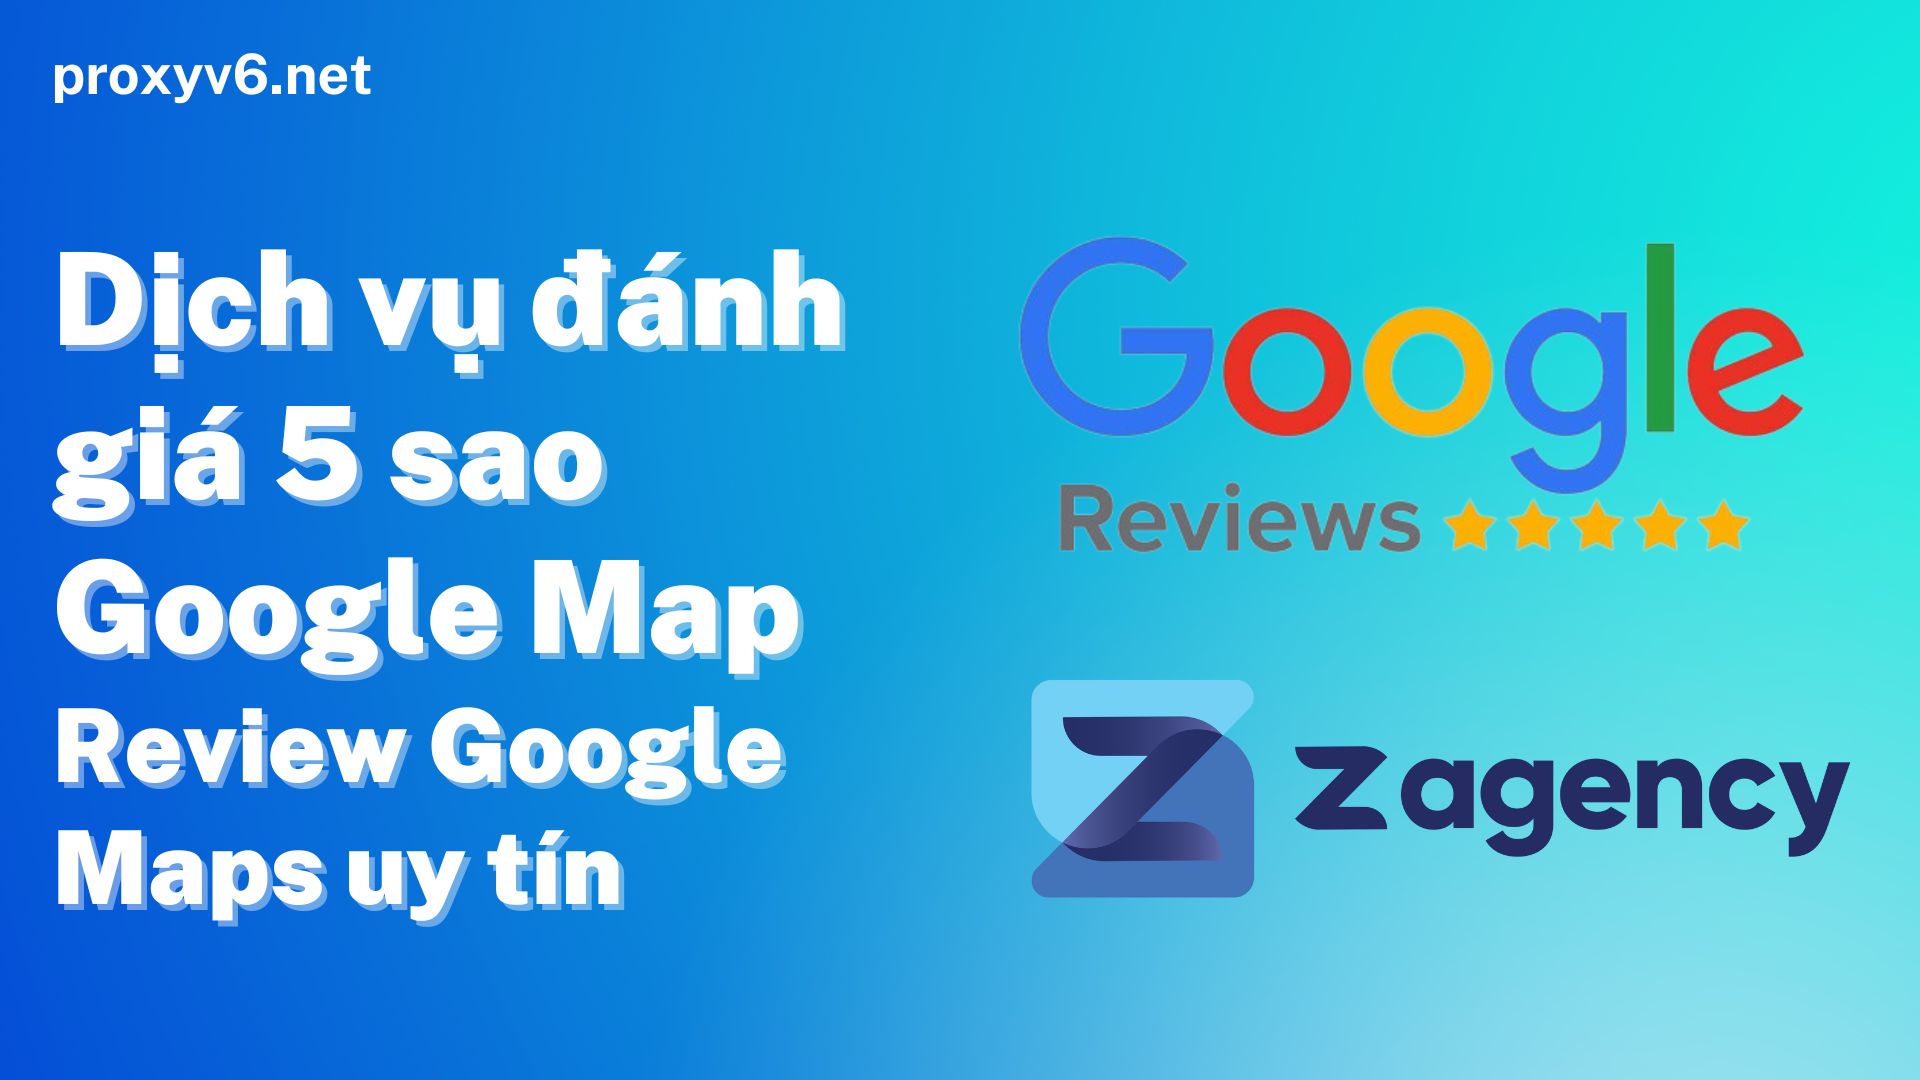 Dịch vụ đánh giá 5 sao Google Map, Review Google Maps uy tín